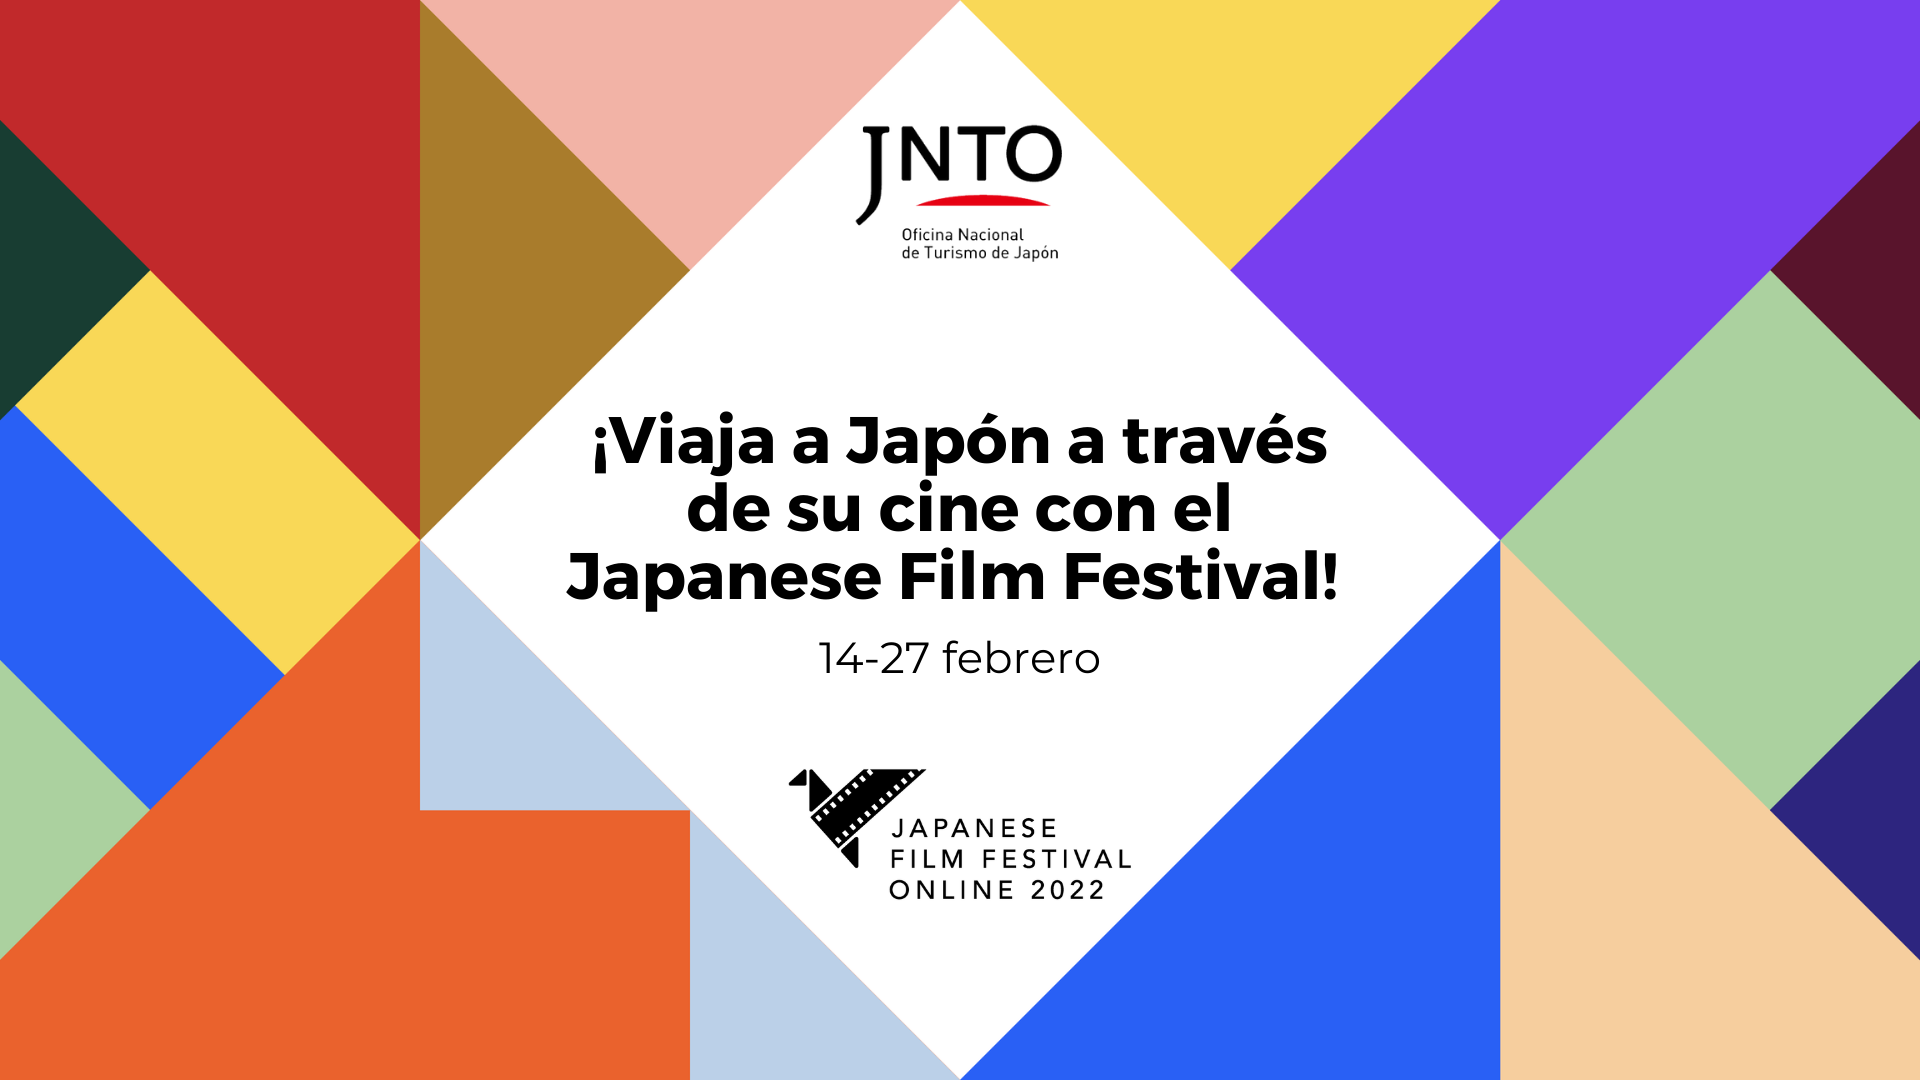 Japanes Film Festival